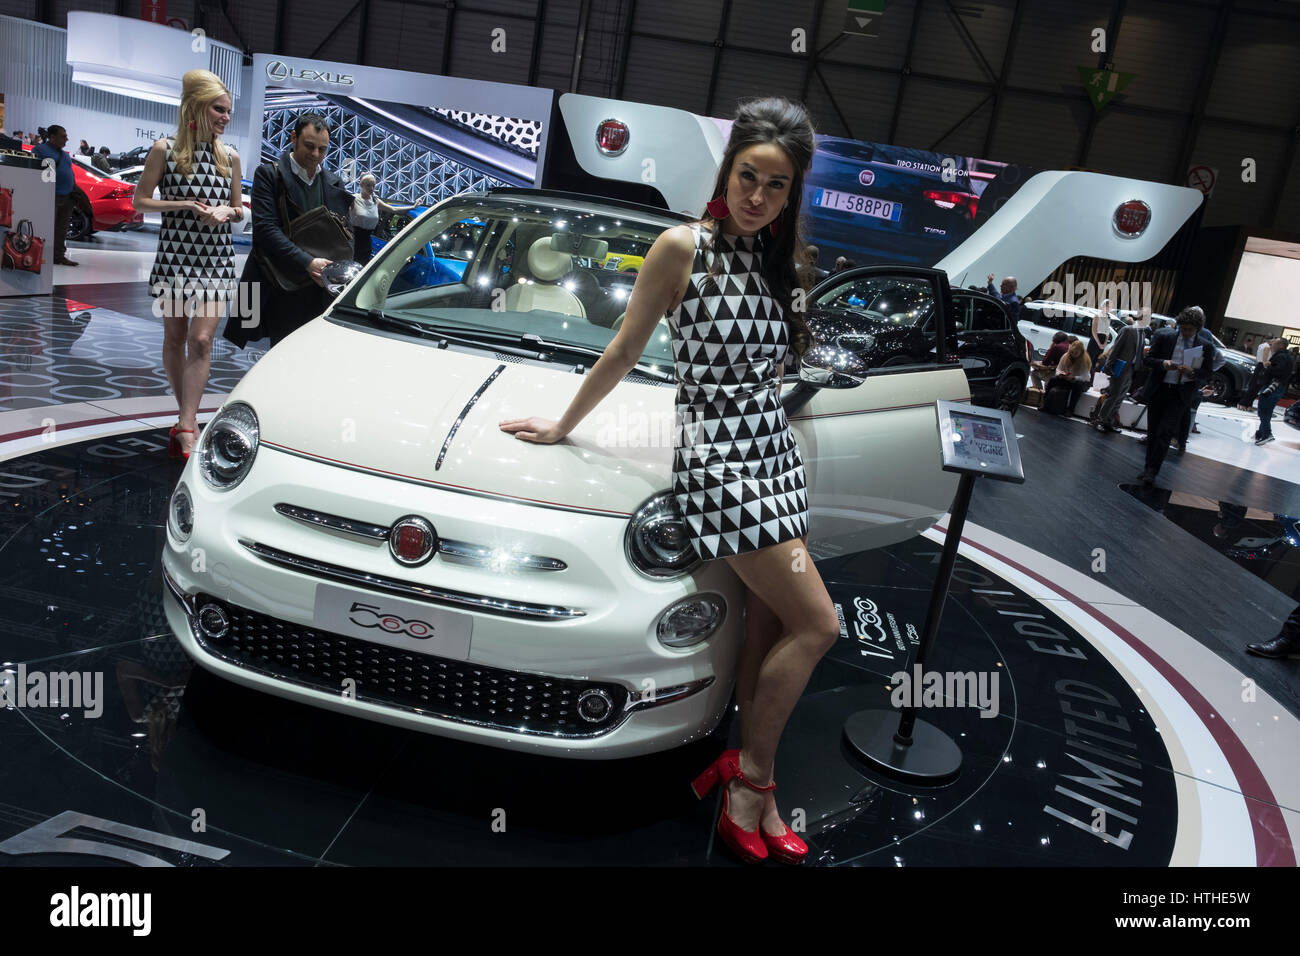 Des modèles posant à côté de Fiat 500 voiture au 87e Salon International de l'Automobile à Genève Suisse 2017 Banque D'Images